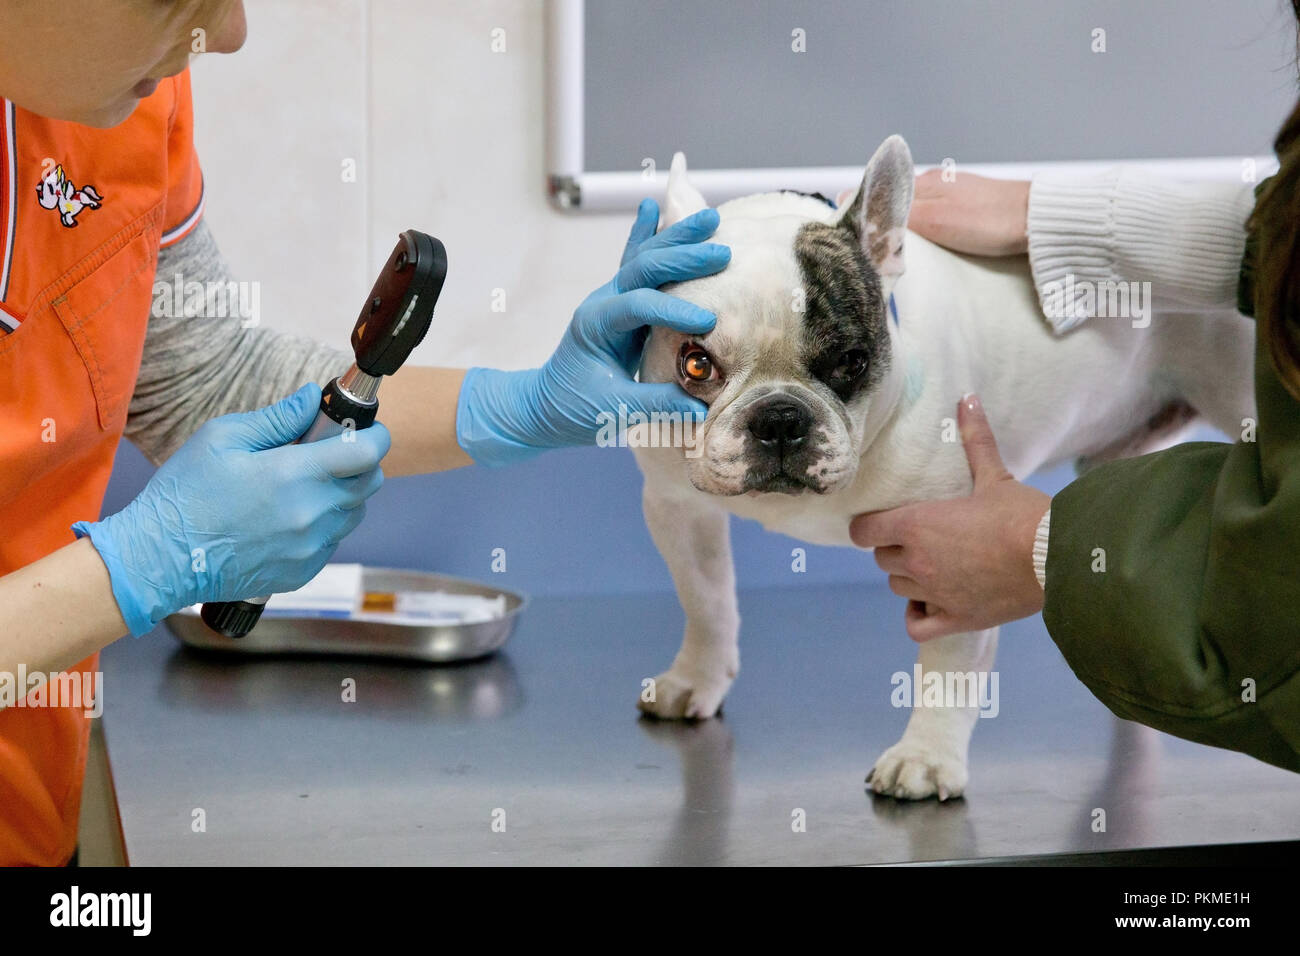 Tierarzt überprüft die Augen eines Hundes, Biomicroscopy. Tierarzt Augenarzt  tun medizinische Verfahren, Untersuchung der Augen eines Hundes in einer  Tierarztpraxis. Gesunde Hund unter ärztlicher Untersuchung Stockfotografie  - Alamy